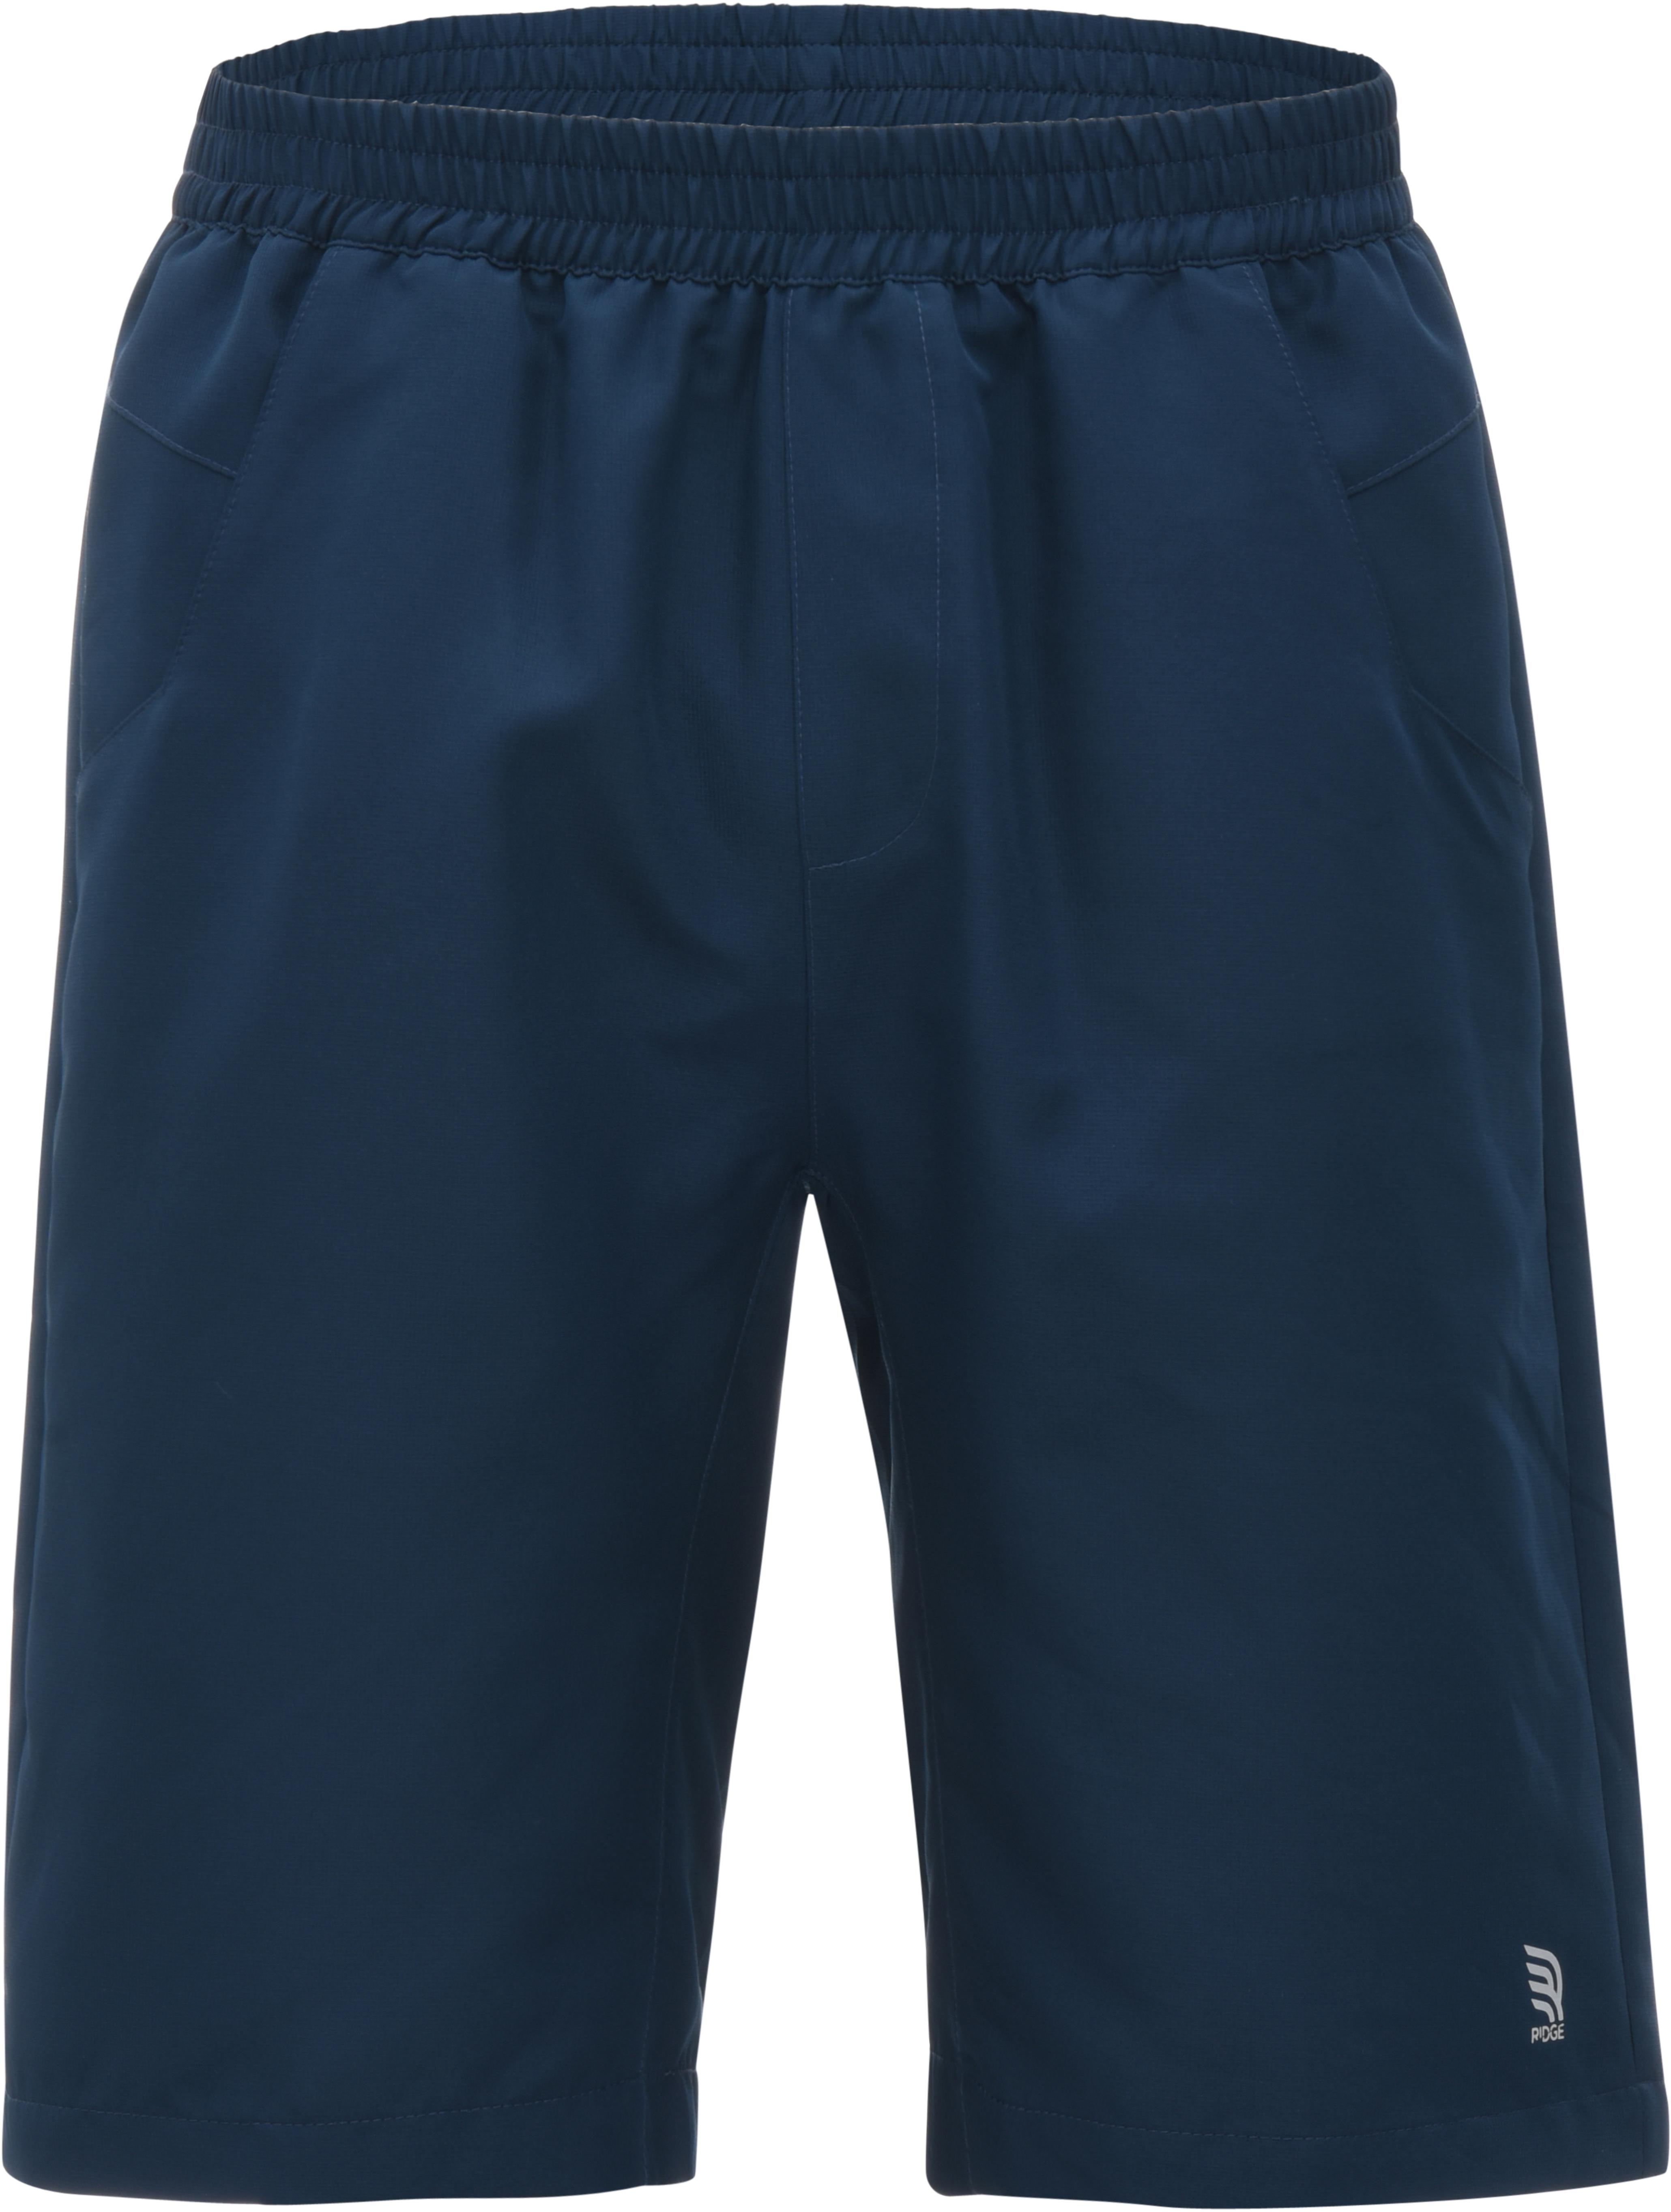 Ridge Mens Casual Shorts, Medium